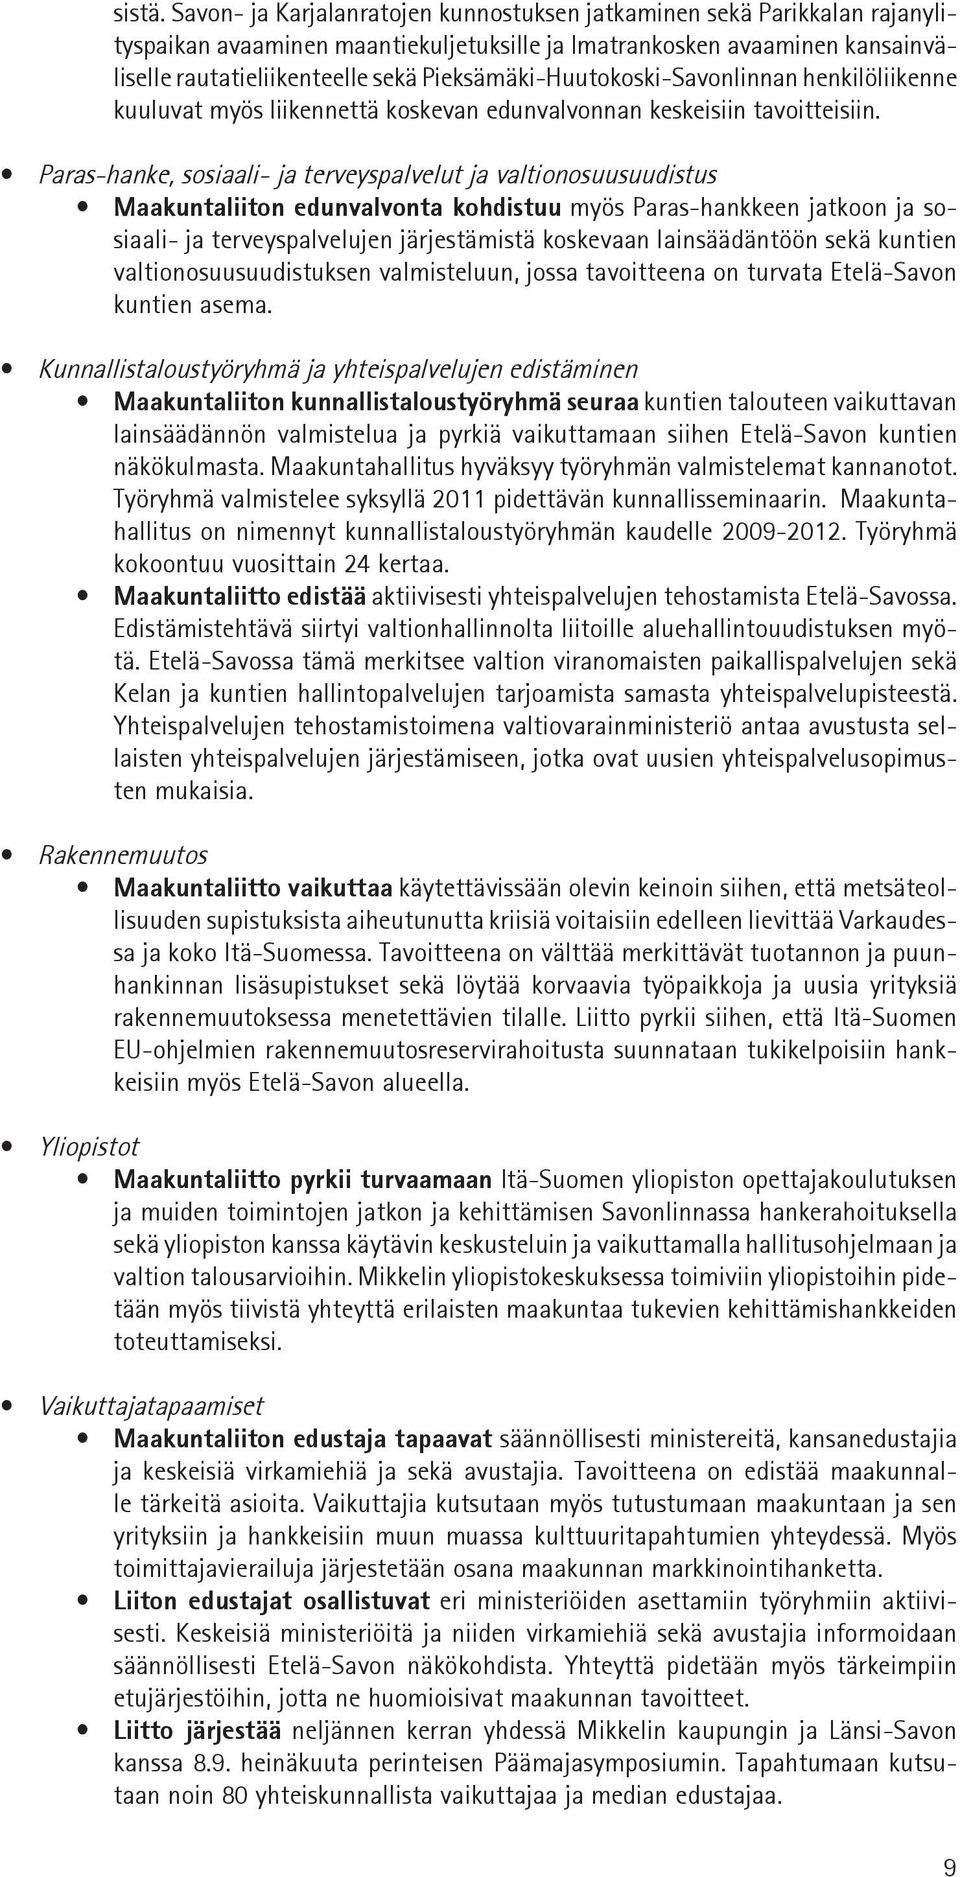 Pieksämäki-Huutokoski-Savonlinnan henkilöliikenne kuuluvat myös liikennettä koskevan edunvalvonnan keskeisiin tavoitteisiin.